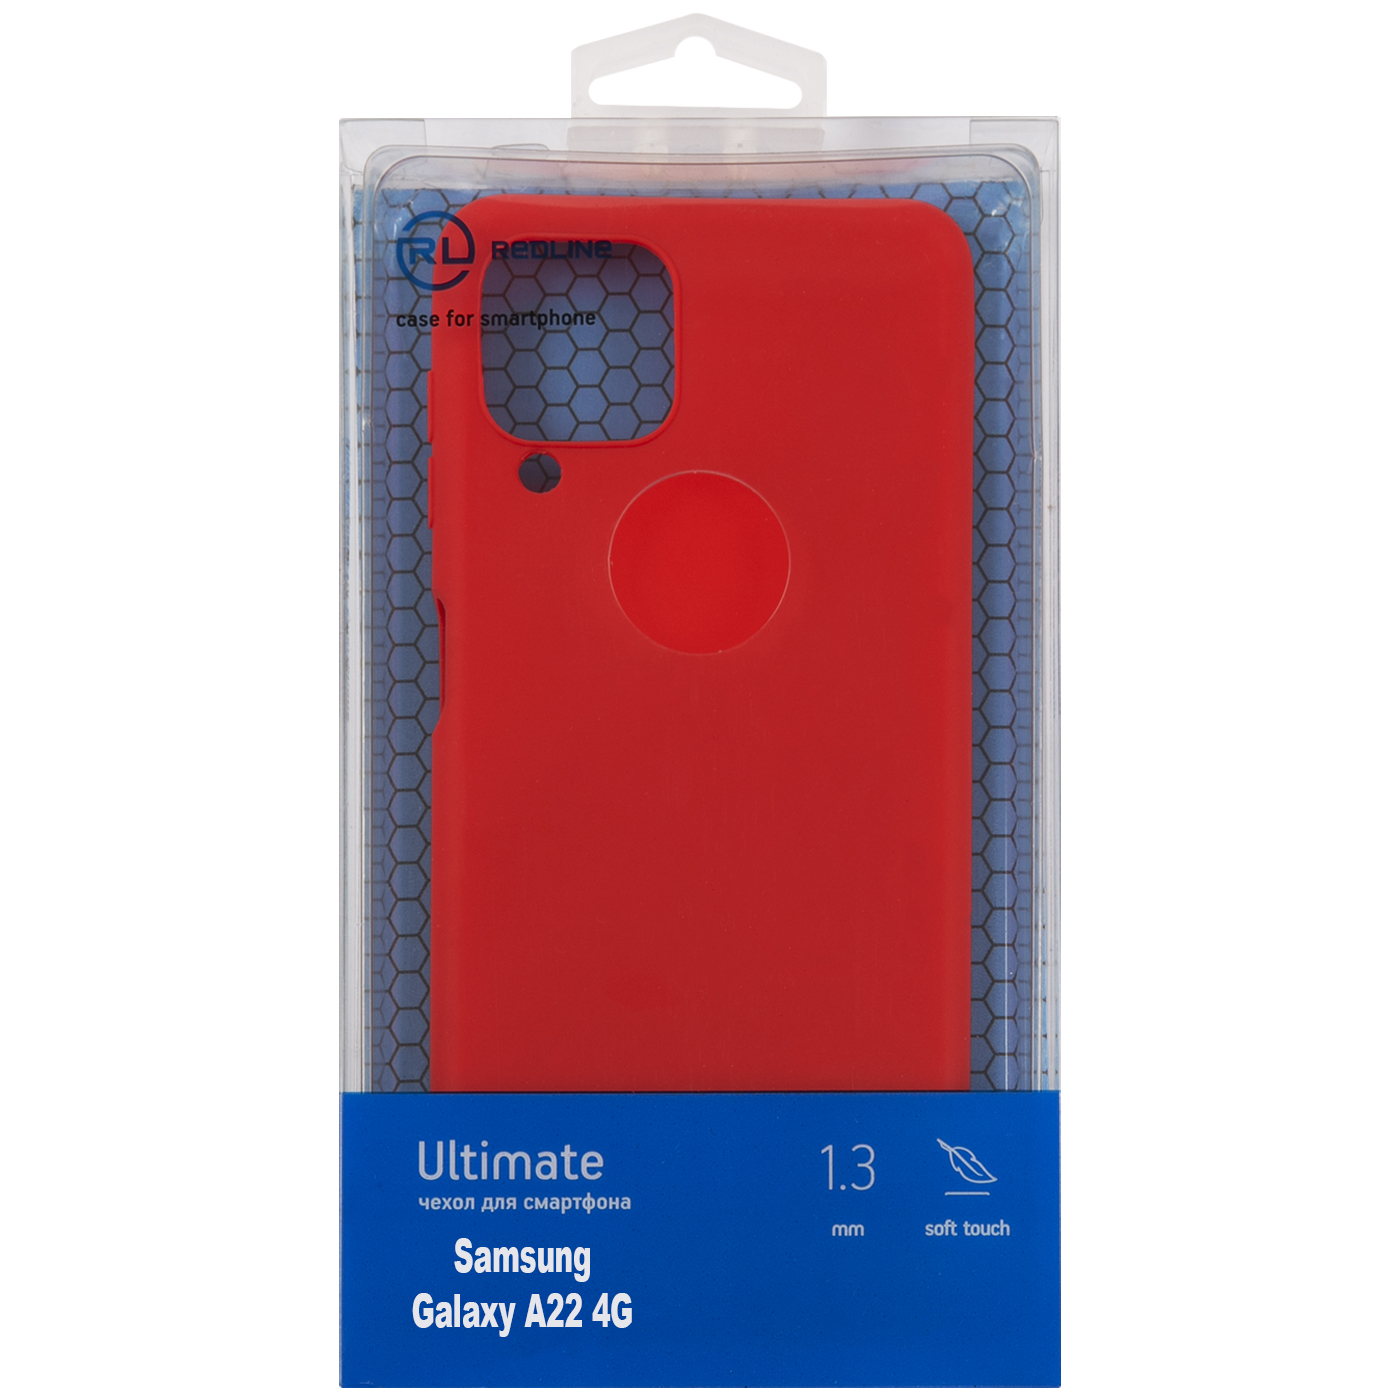 Чехол защитный Red Line Ultimate для Samsung Galaxy A22 4G, красный УТ000025031 чехол защитный red line ultimate для samsung galaxy a22 4g красный ут000025031